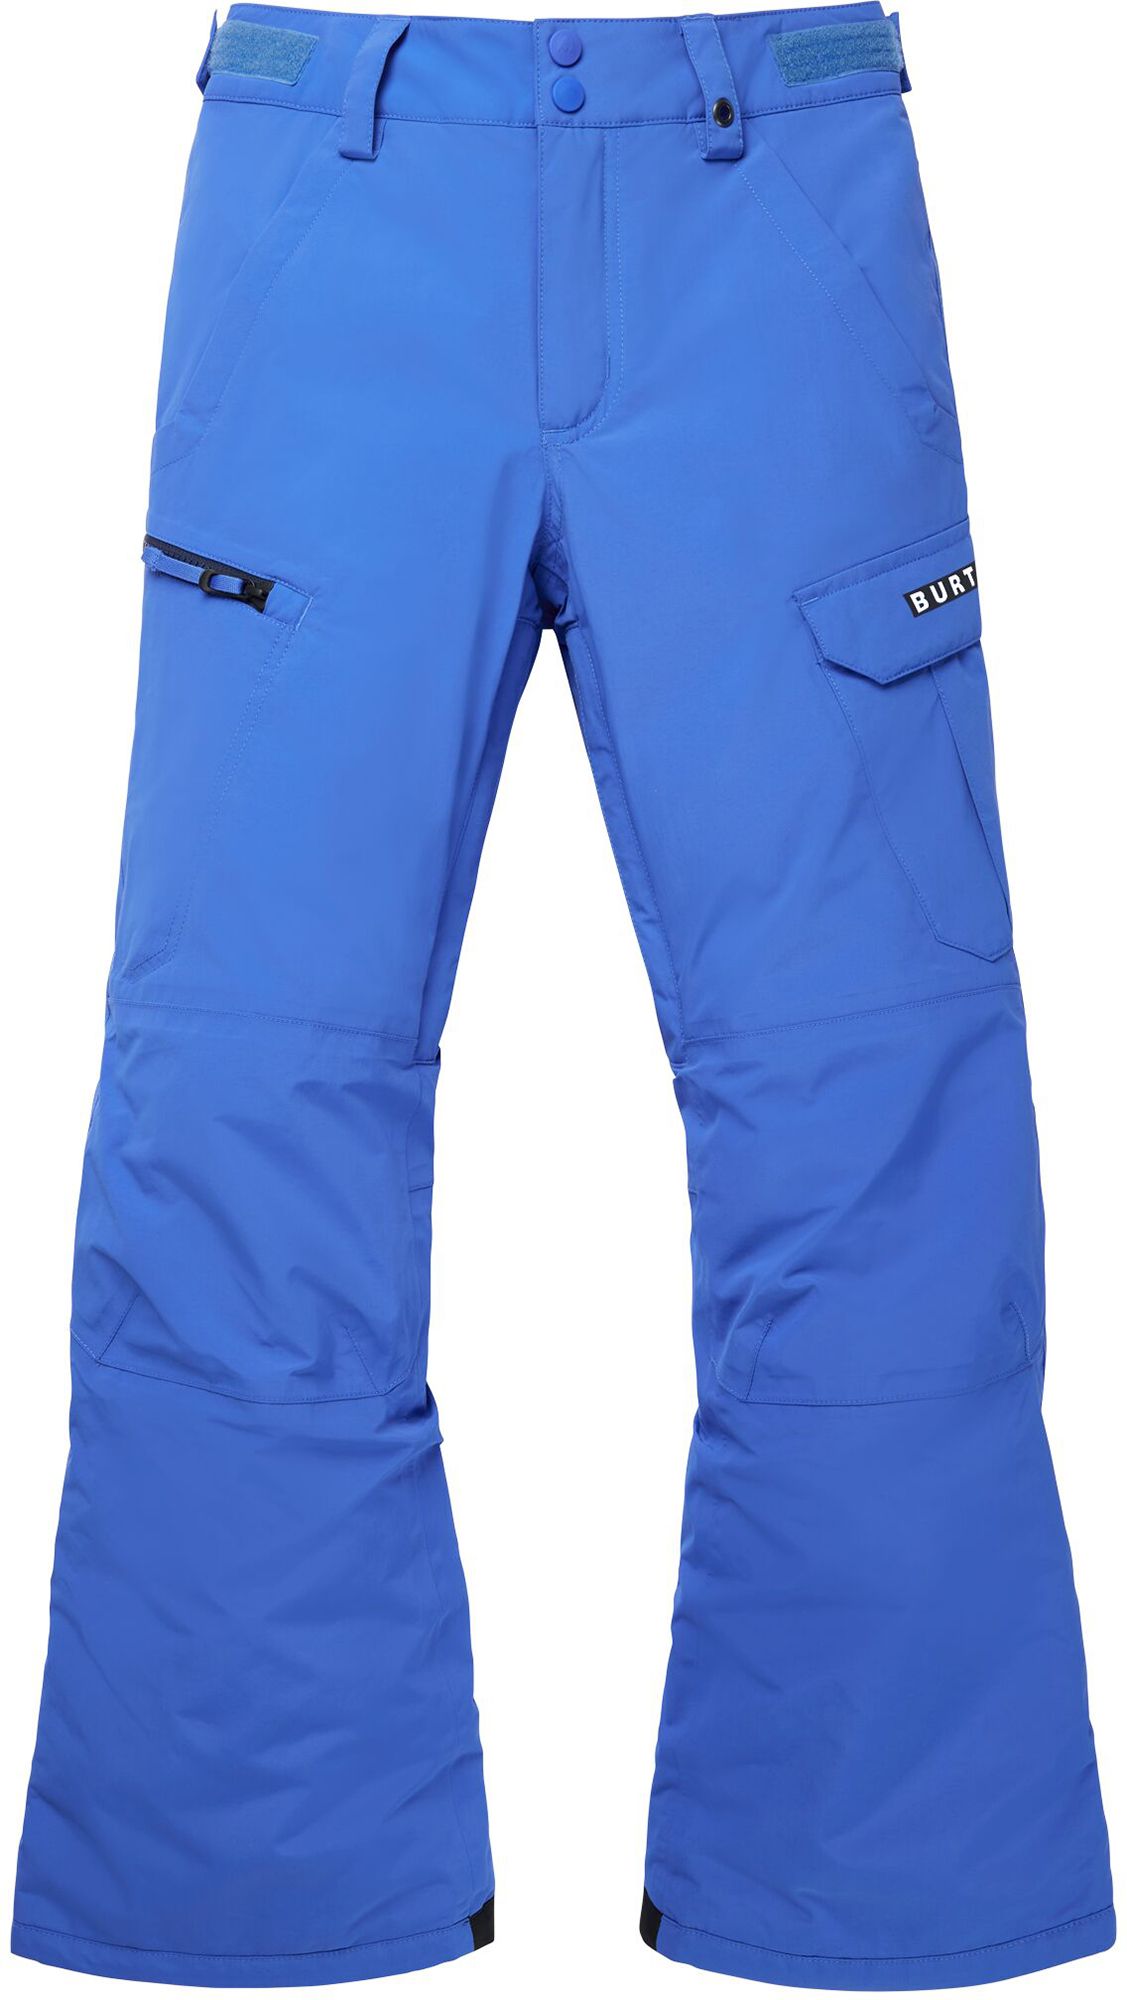 Photos - Ski Wear Burton Boys' Exile Cargo Pants, Large, Amparo Blue 21BRTBBXLCRGPNTXXAPO 